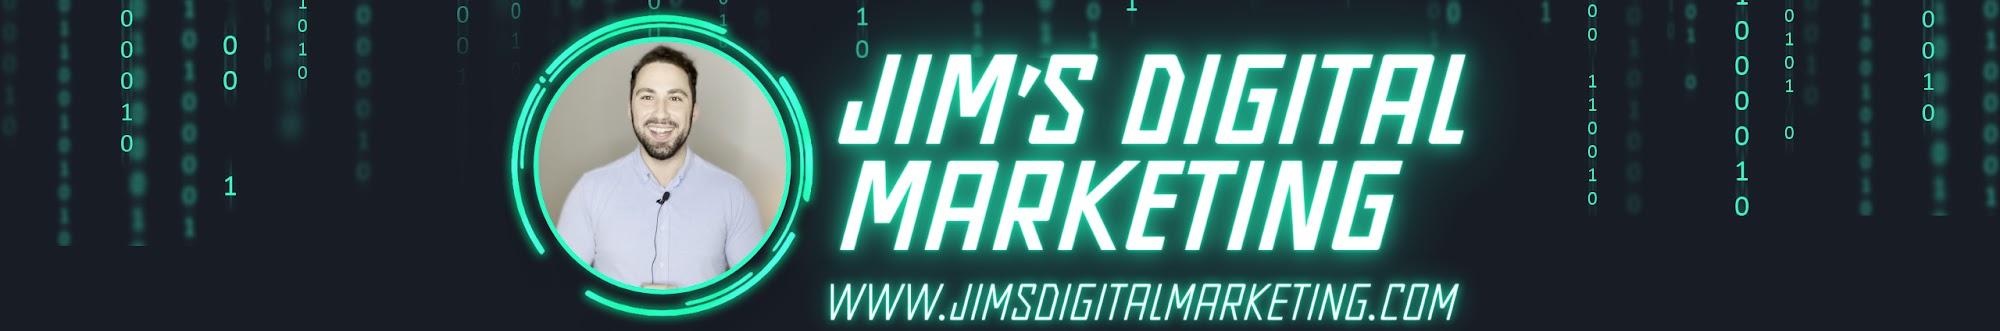 Jim's Digital Marketing